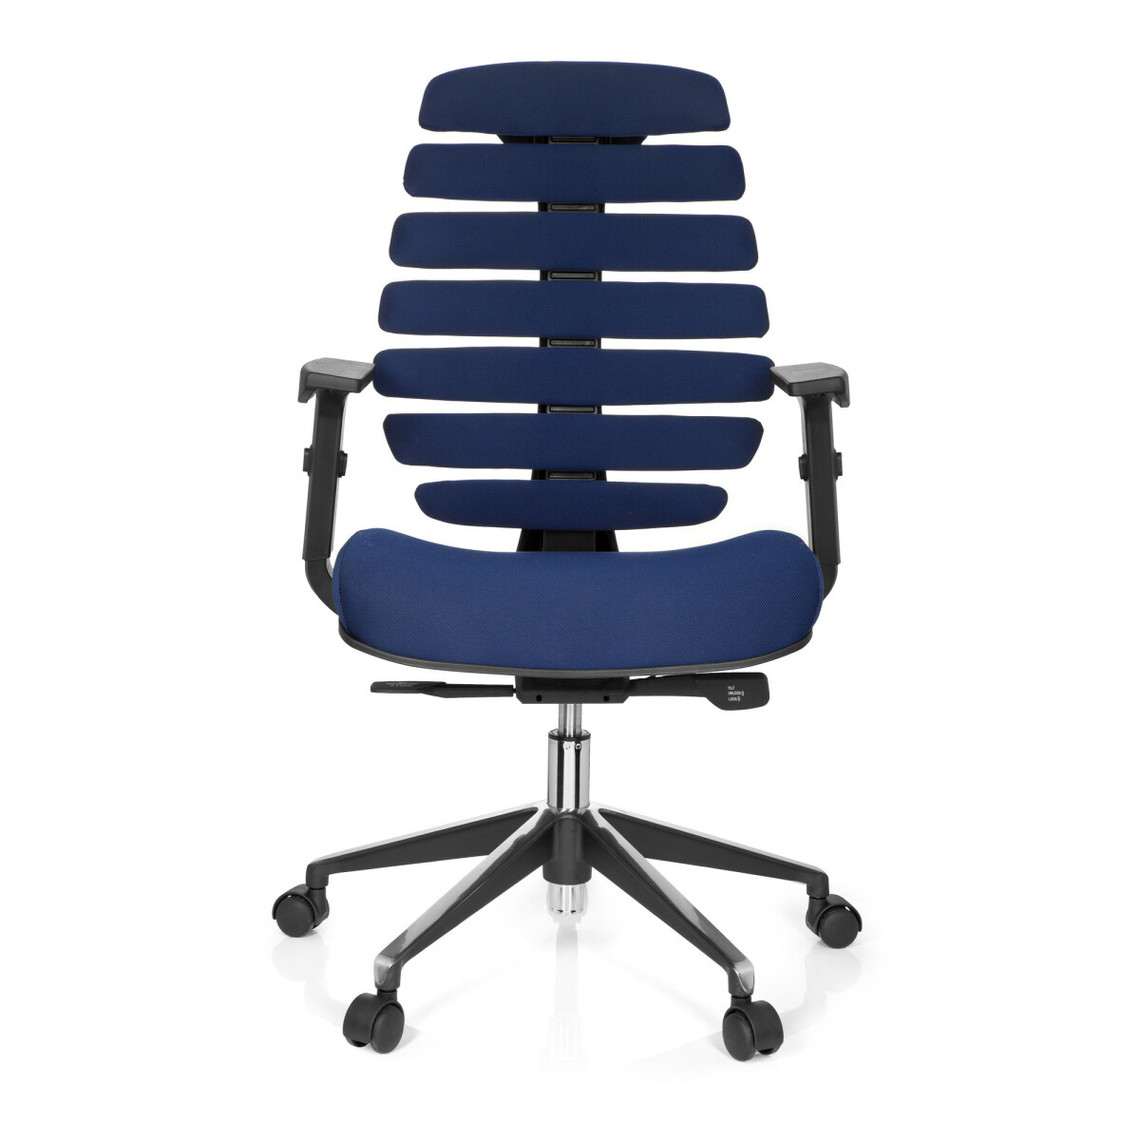 tissu robuste piètement en acier dossier bas inclinable chaise pivotante AVIDA bleu avec accoudoirs rembourrés hjh OFFICE 719110 chaise de bureau réglable en hauteur confortable et élégant 